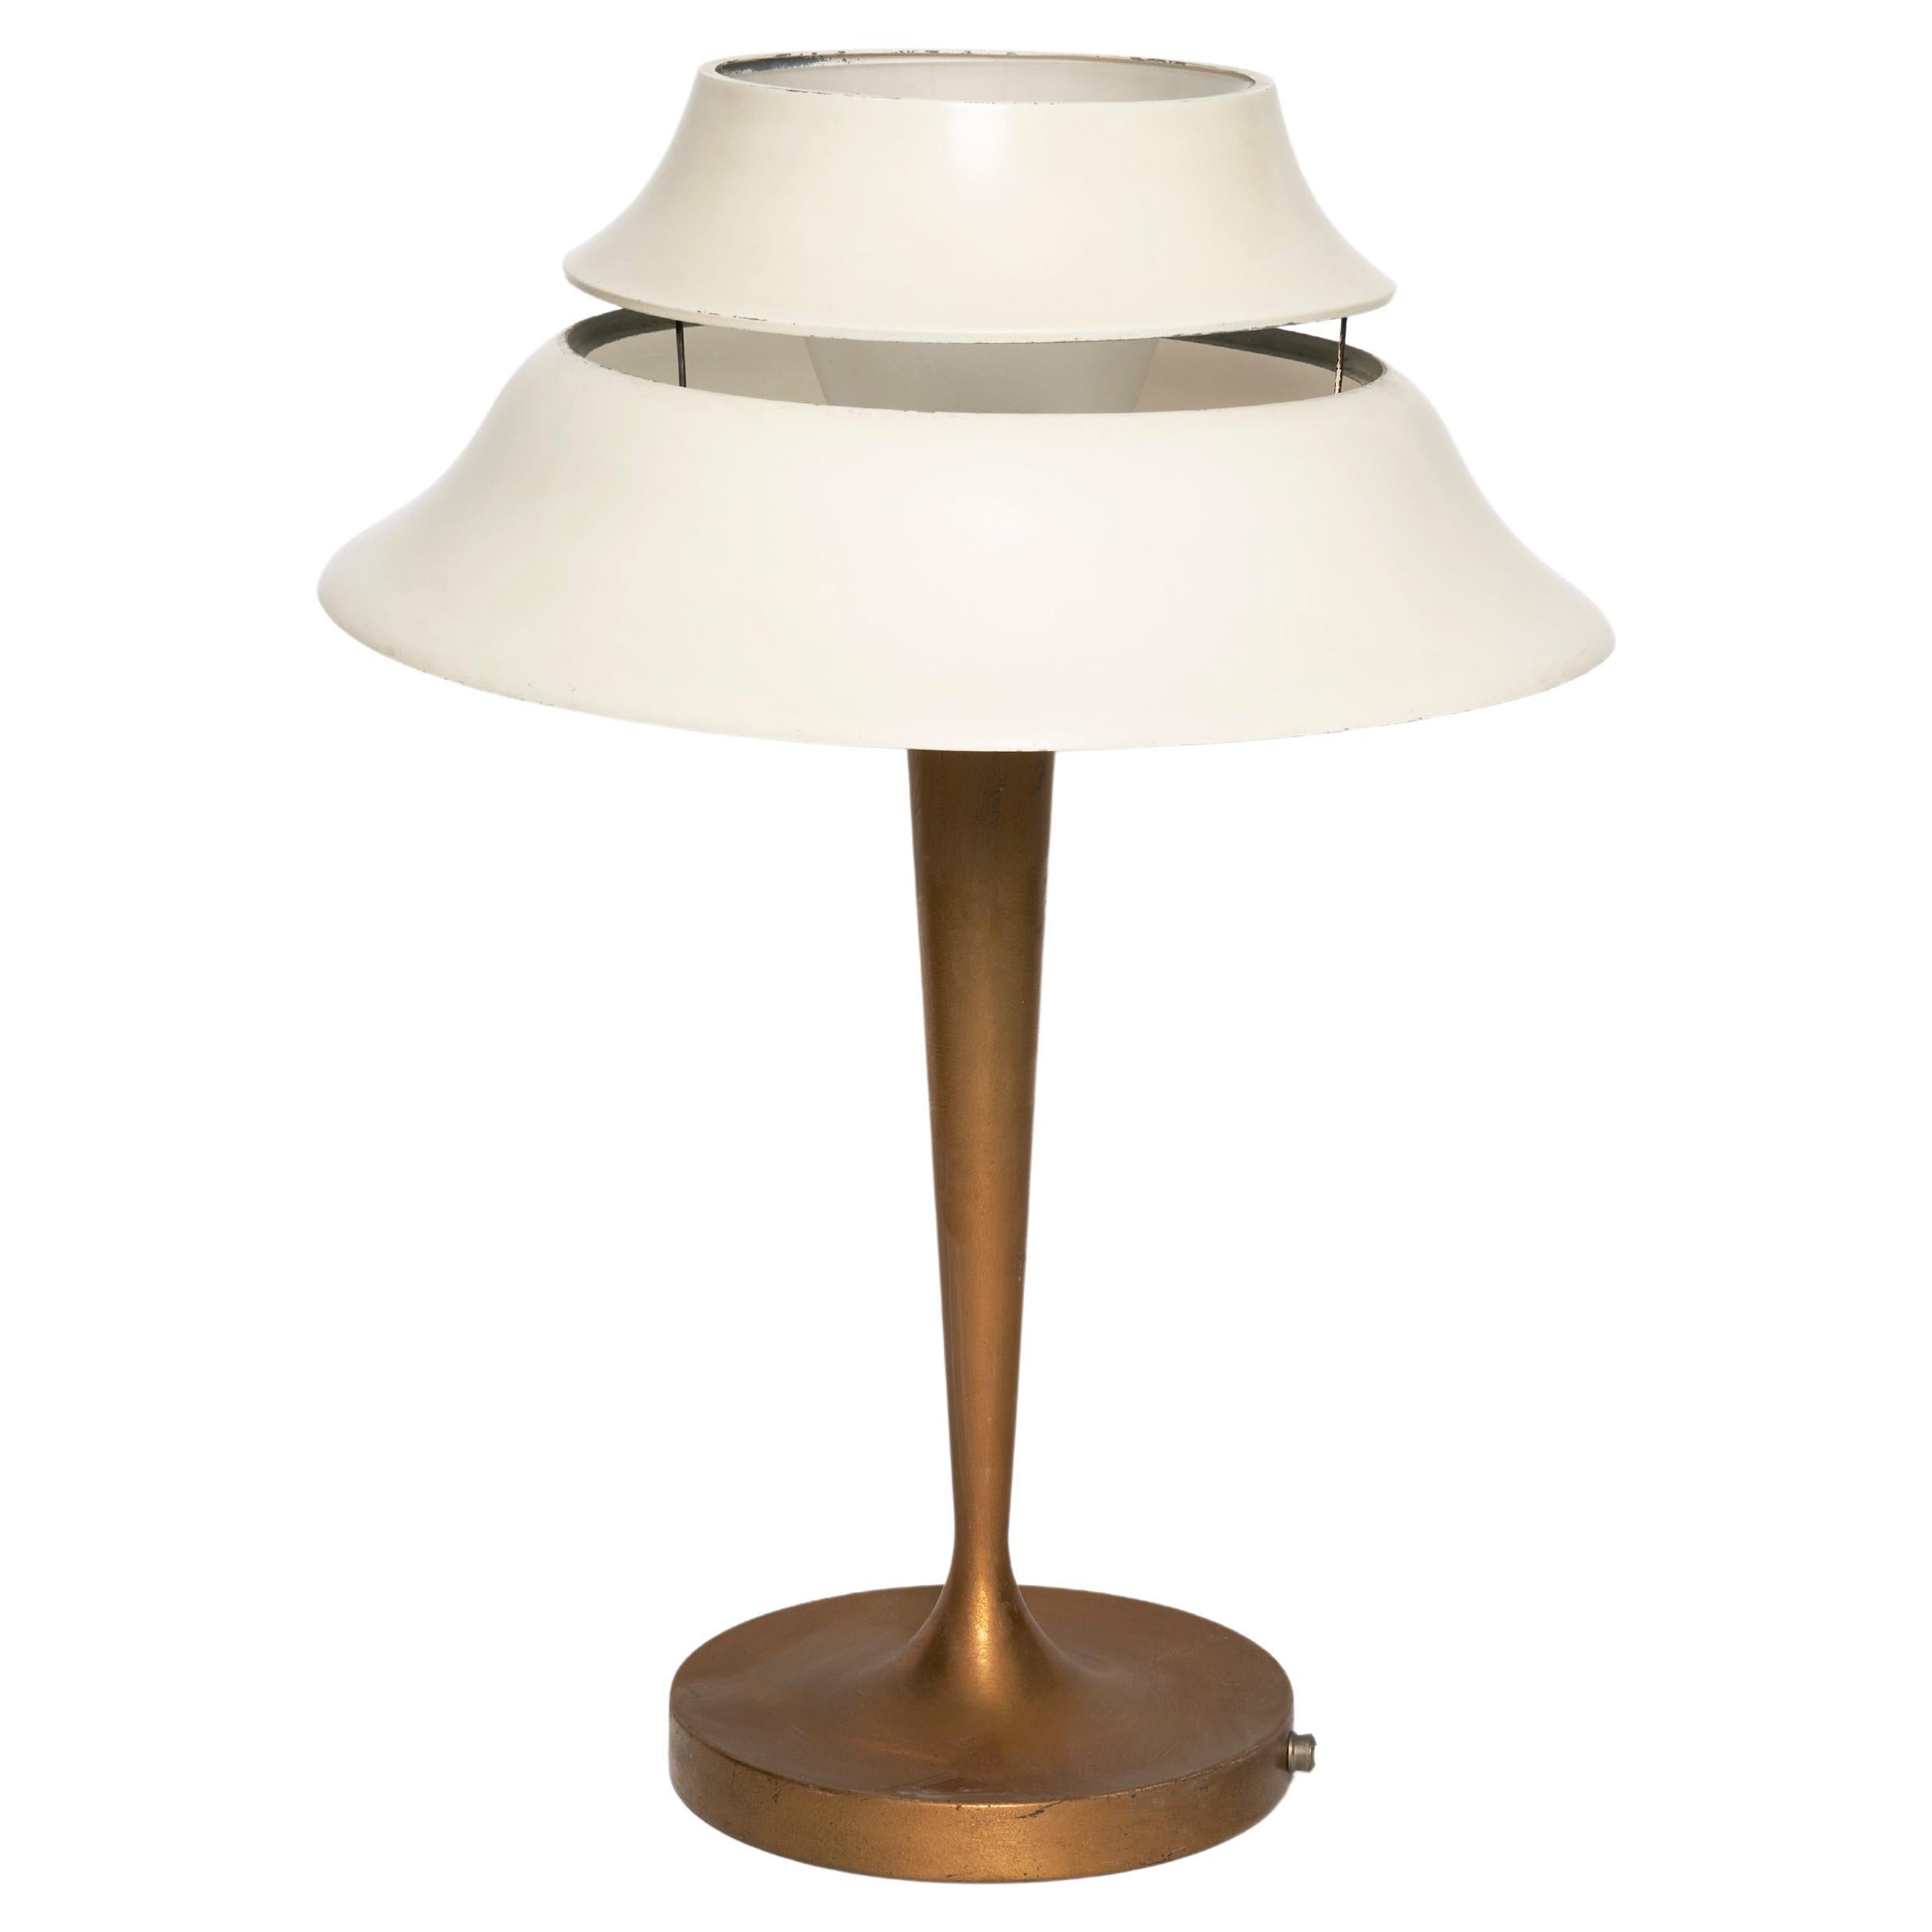 Atelier Jean Perzel Table Lamp "516" For Sale